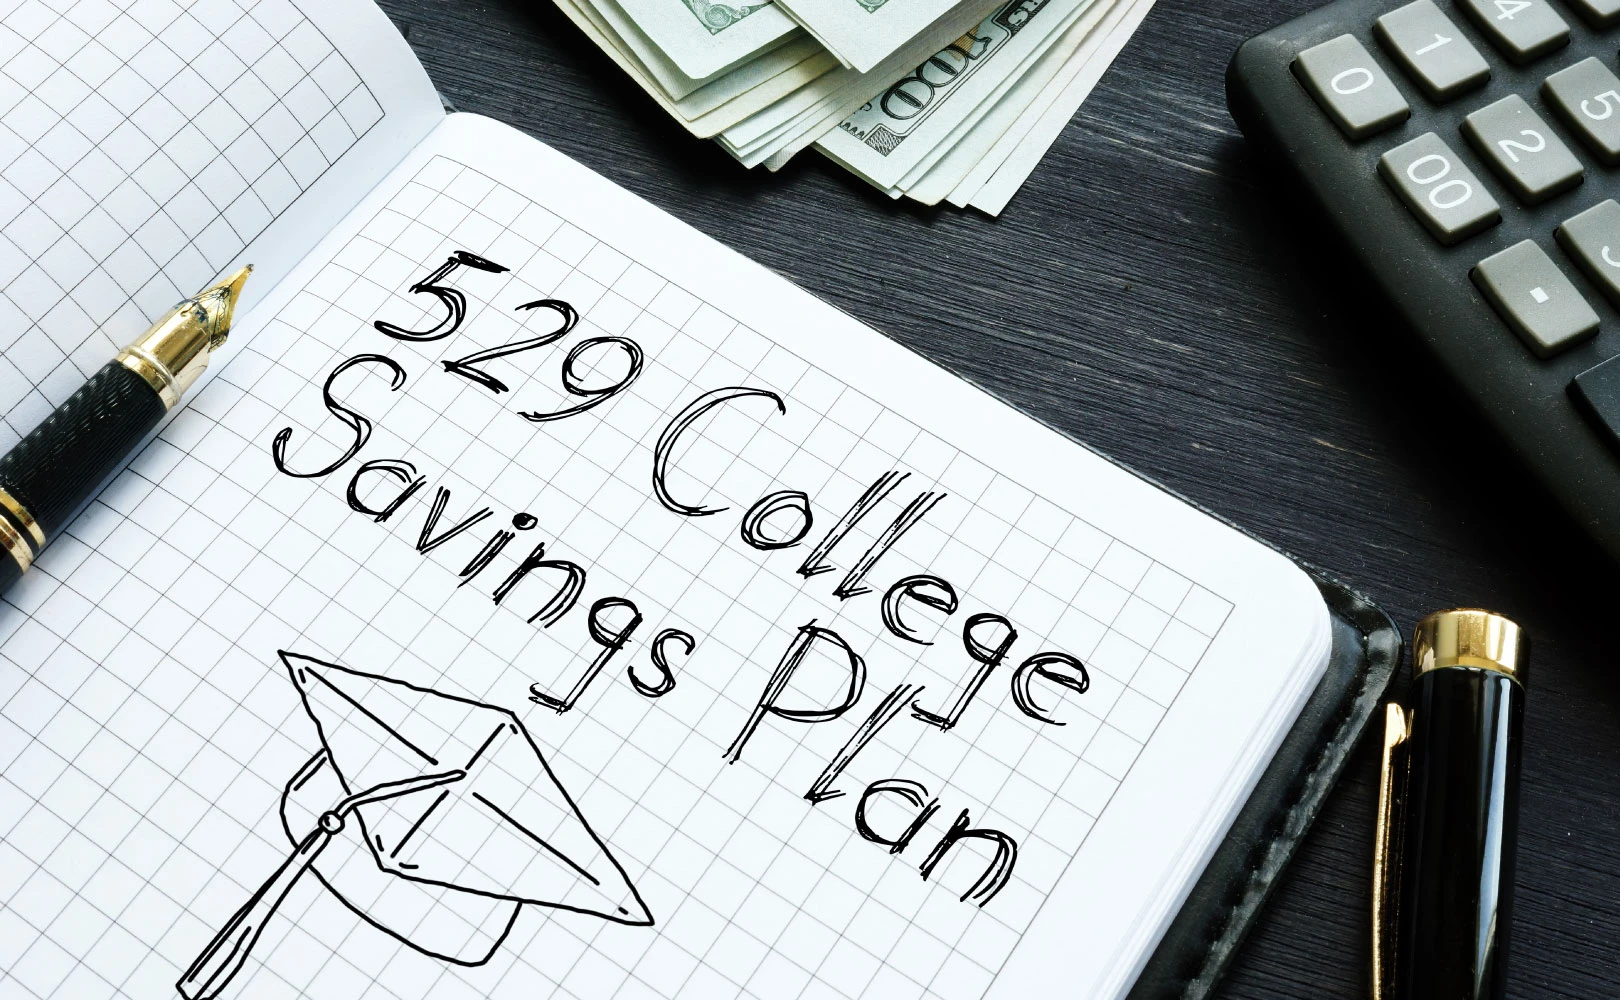 529 College Savings Plan